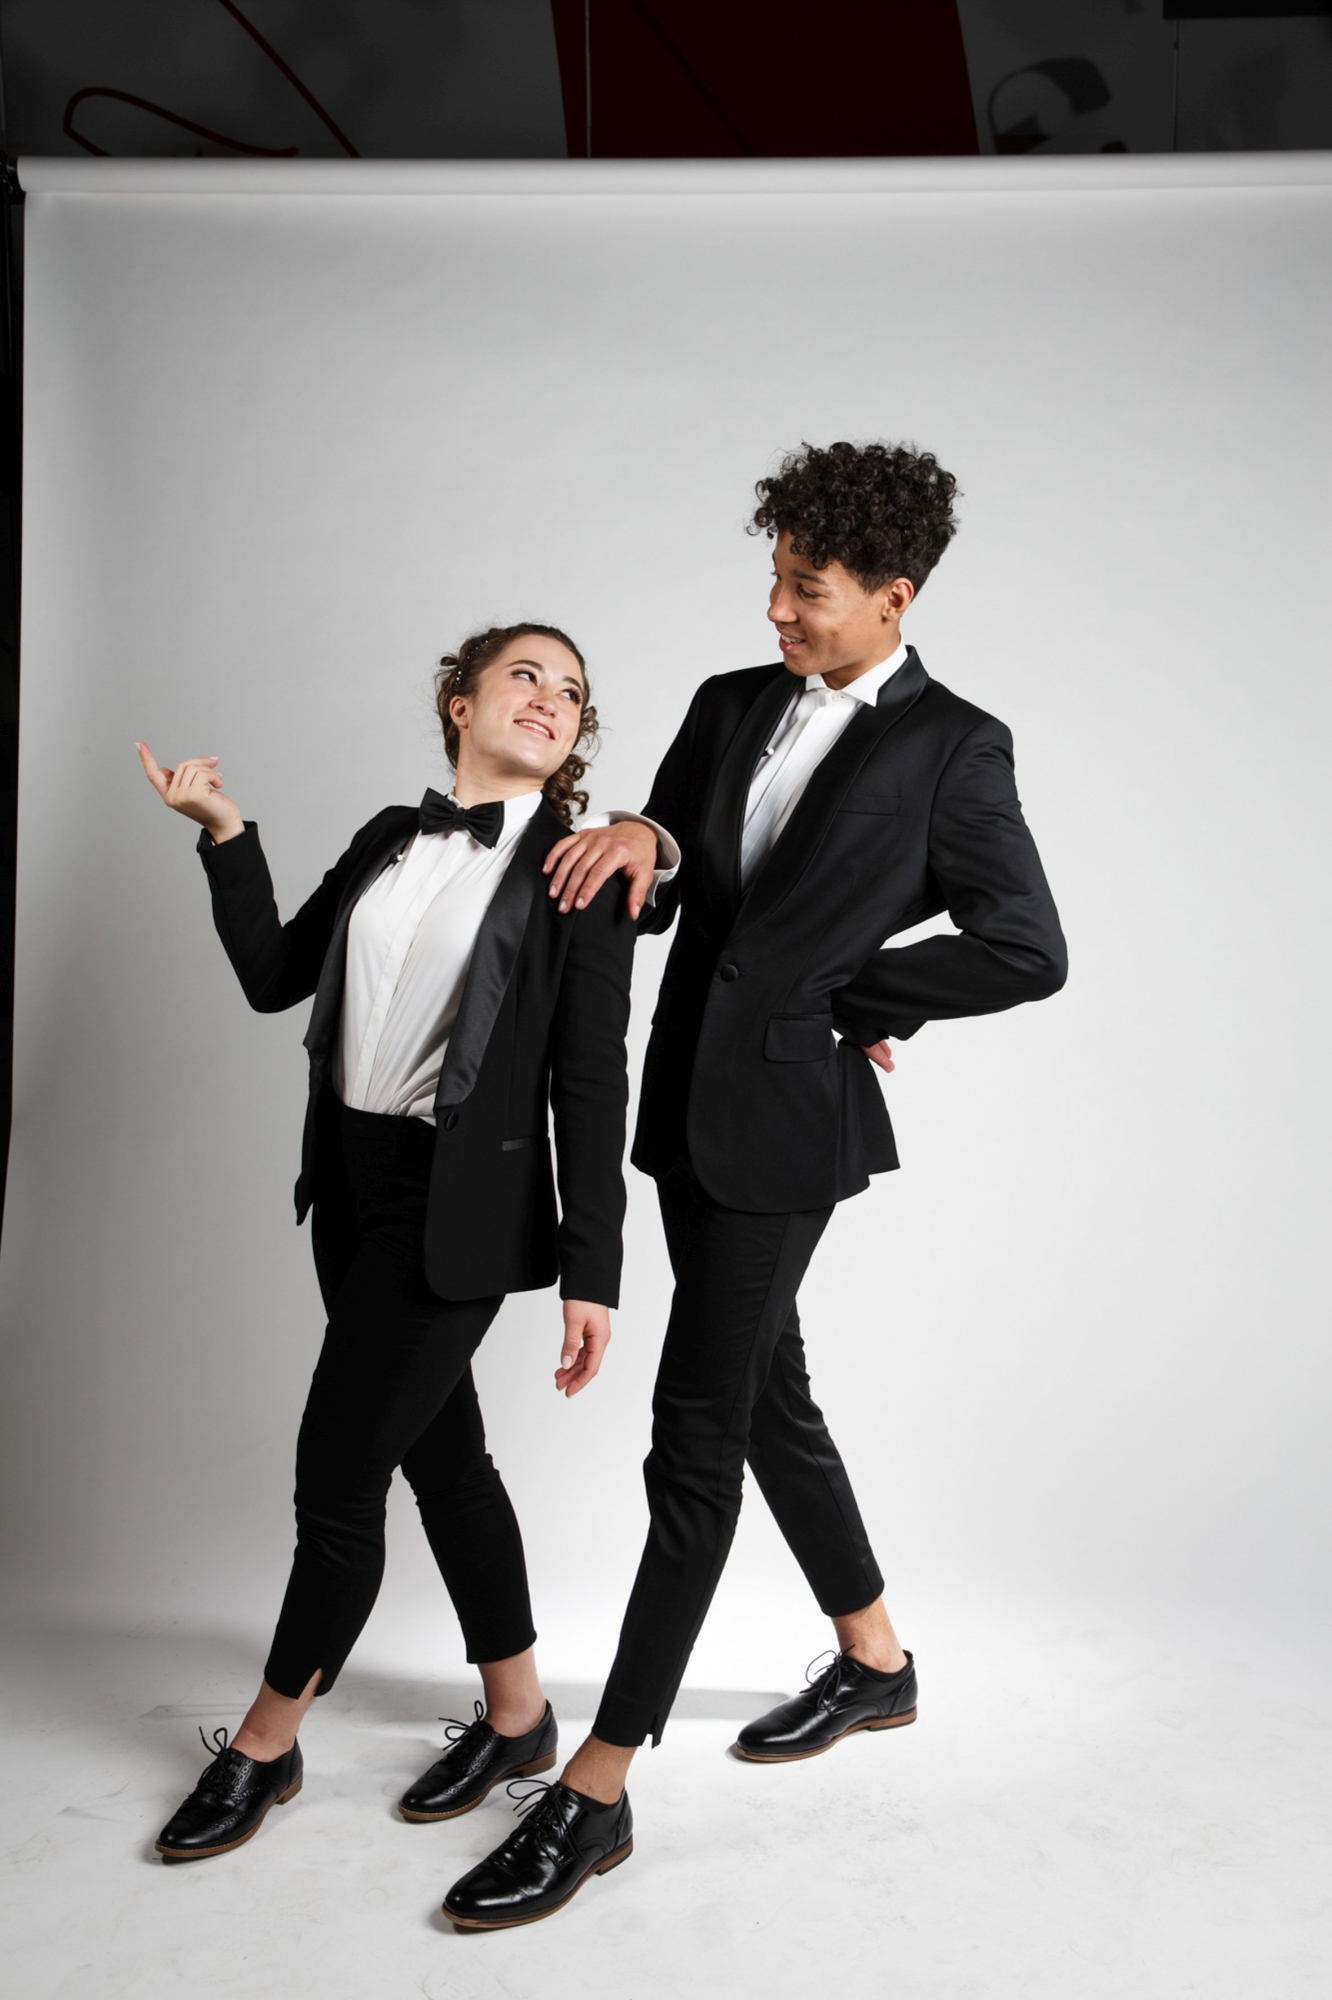 Joseph et Chloé dans leur tenue de samedi soir dans le concours télévisuel "Alors, on danse?"